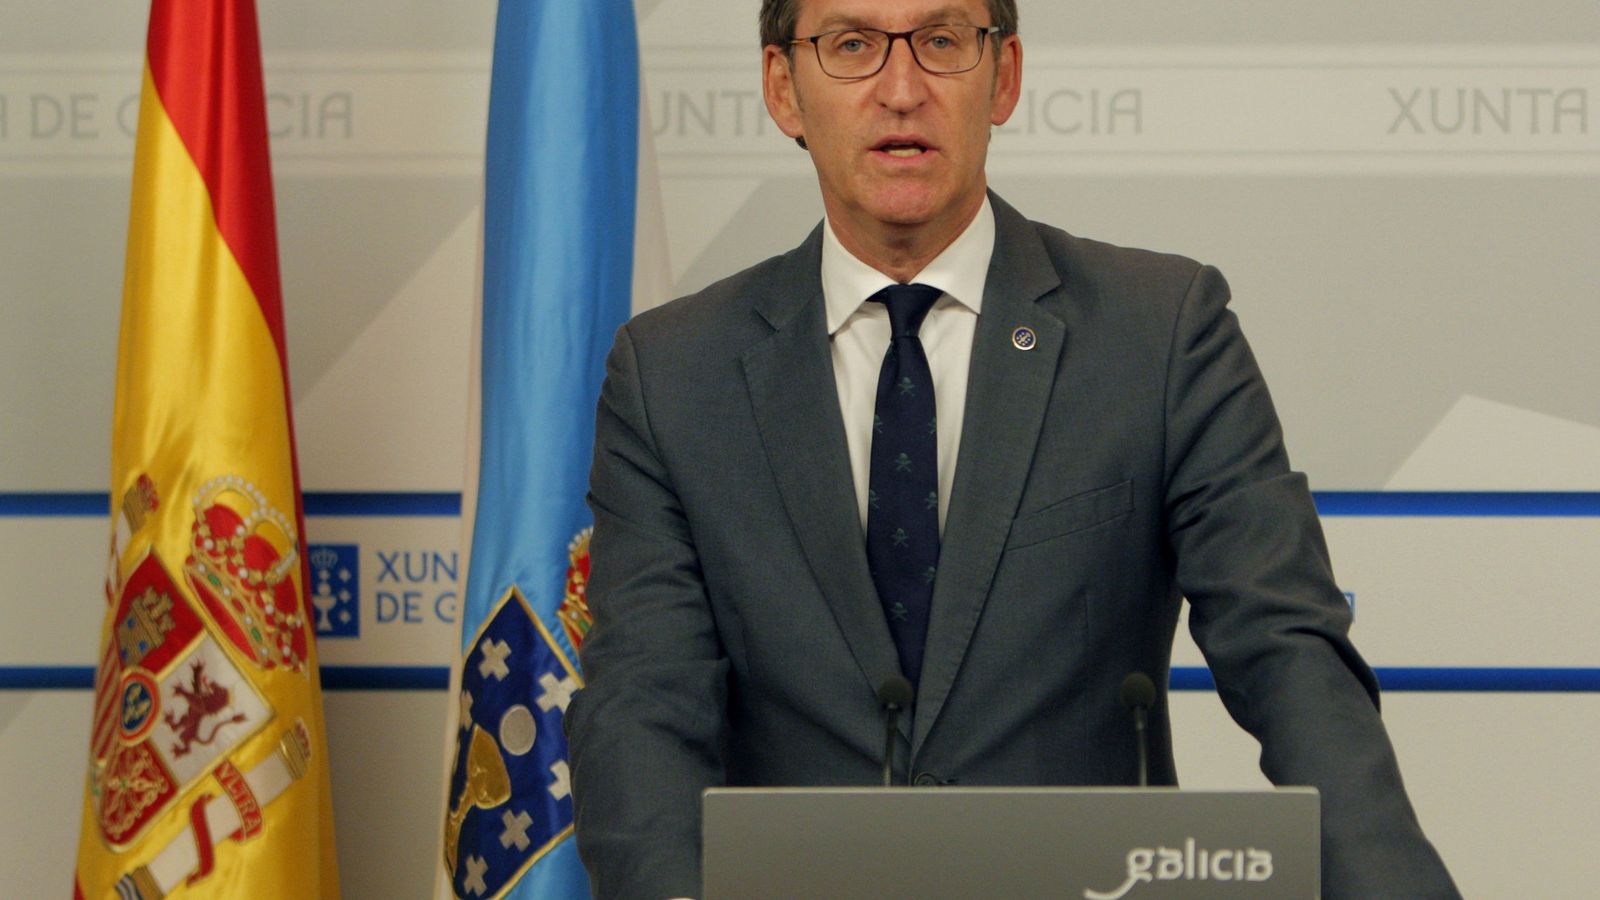 Foto: El presidente de la Xunta de Galicia, Alberto Núñez Feijóo. (EFE)